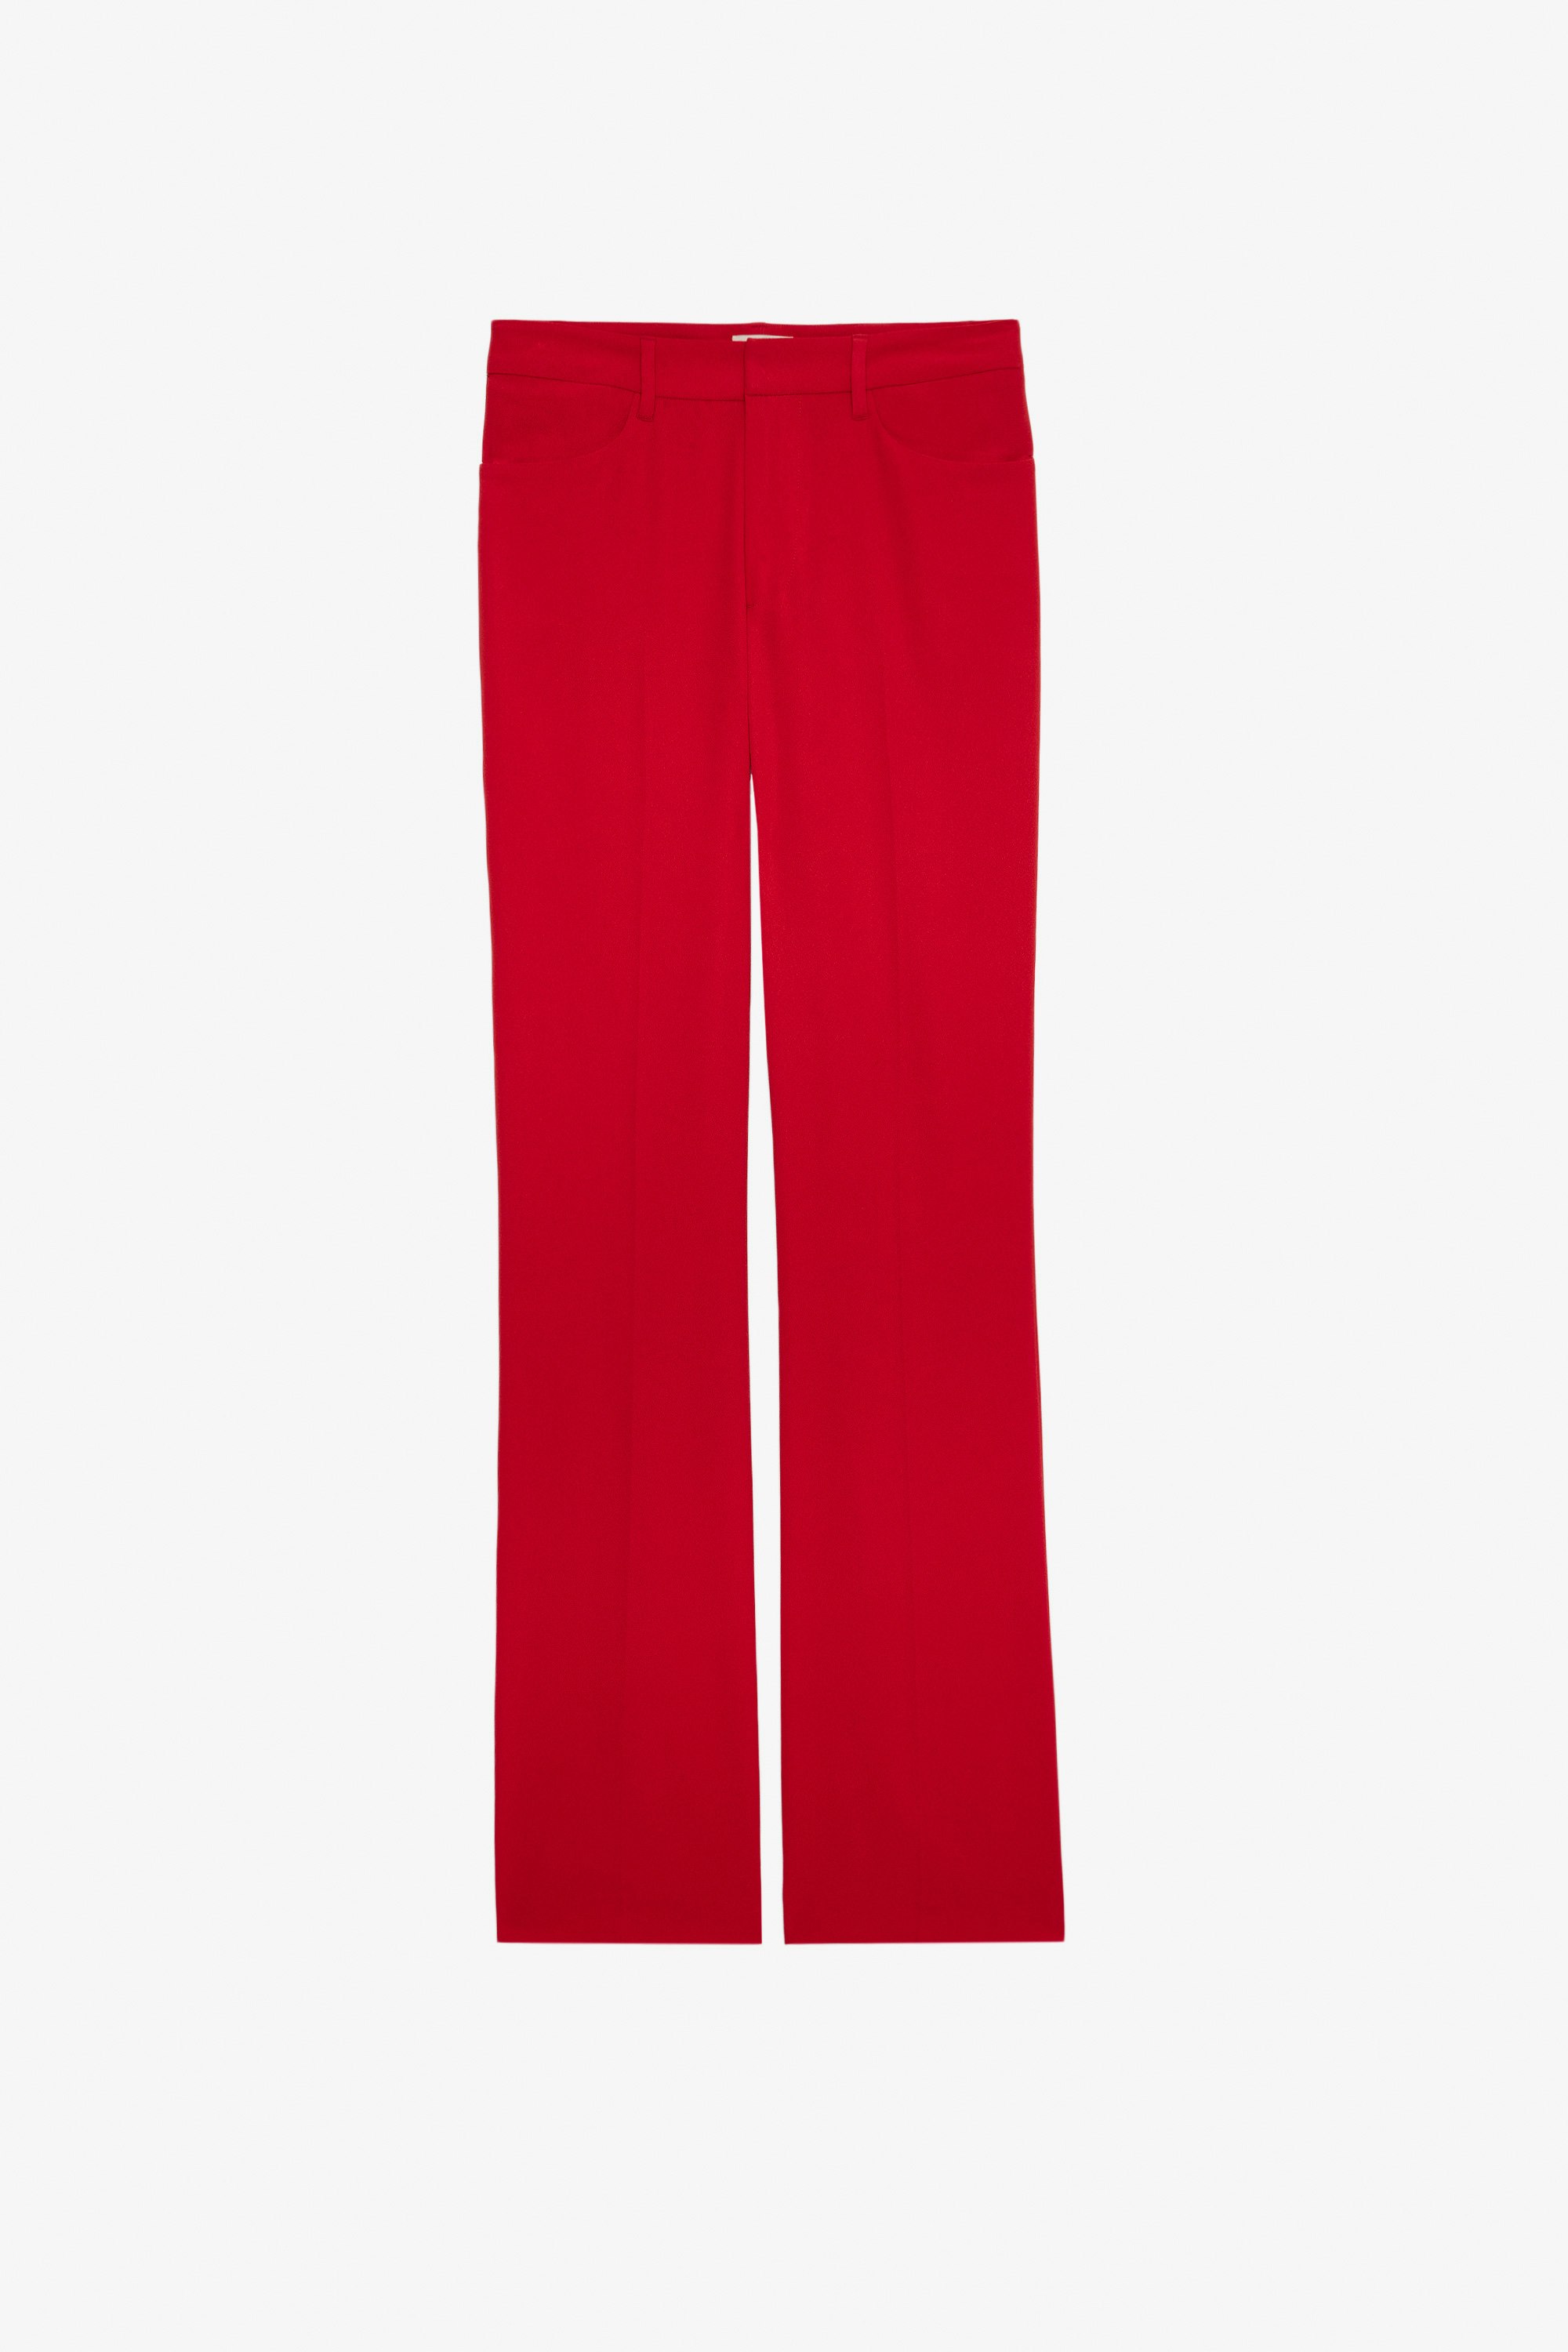 Pantalón Pistol Pantalón rojo de traje de crepé para mujer.